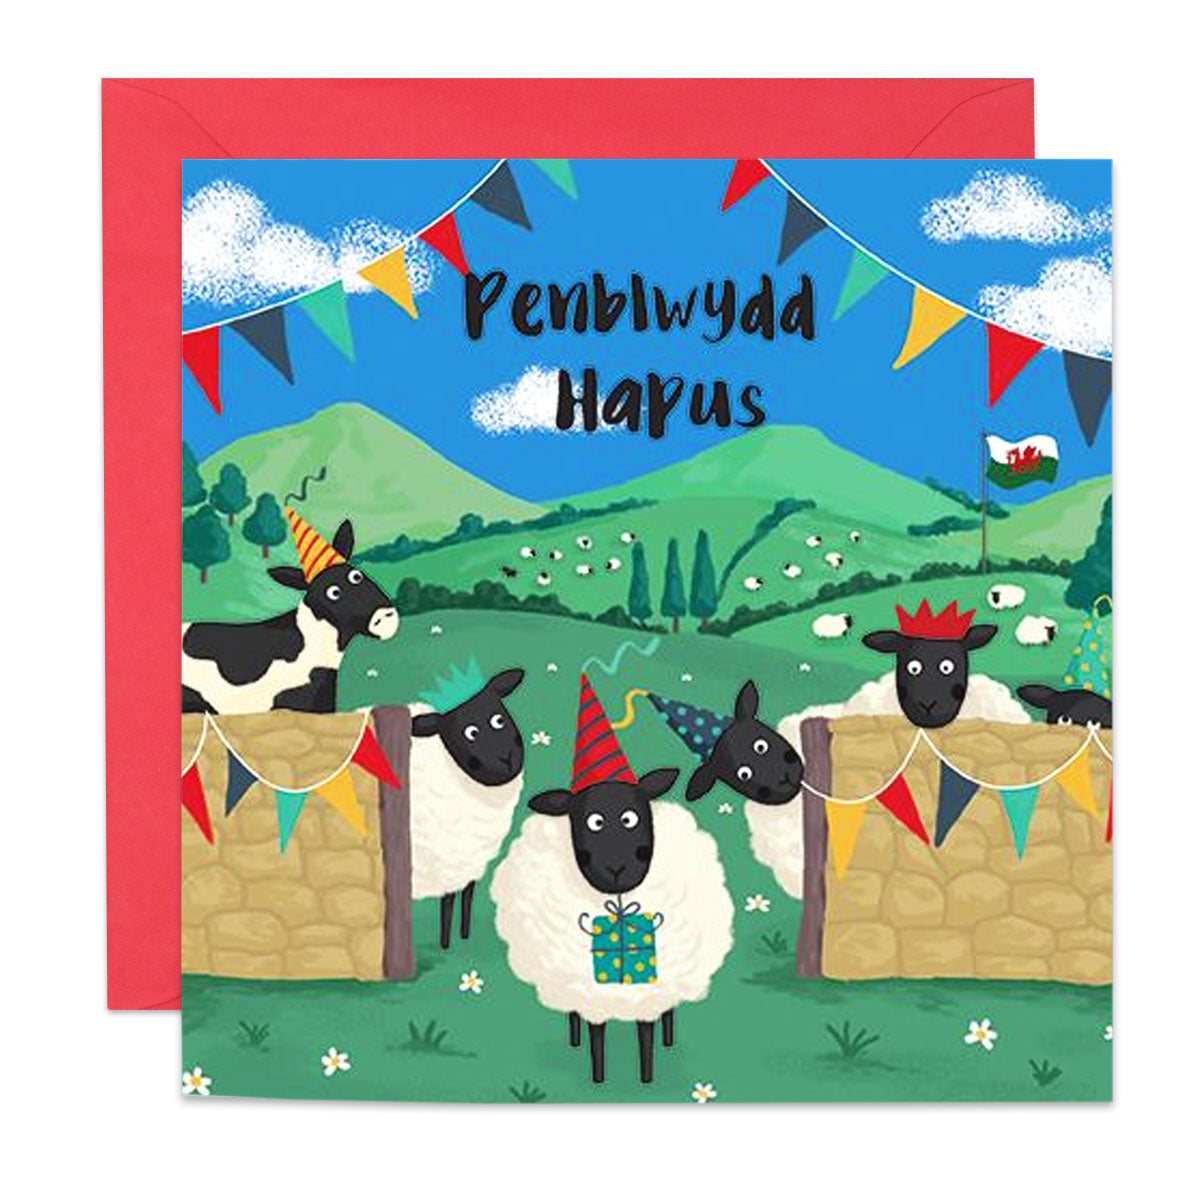 Penblwydd Hapus Card